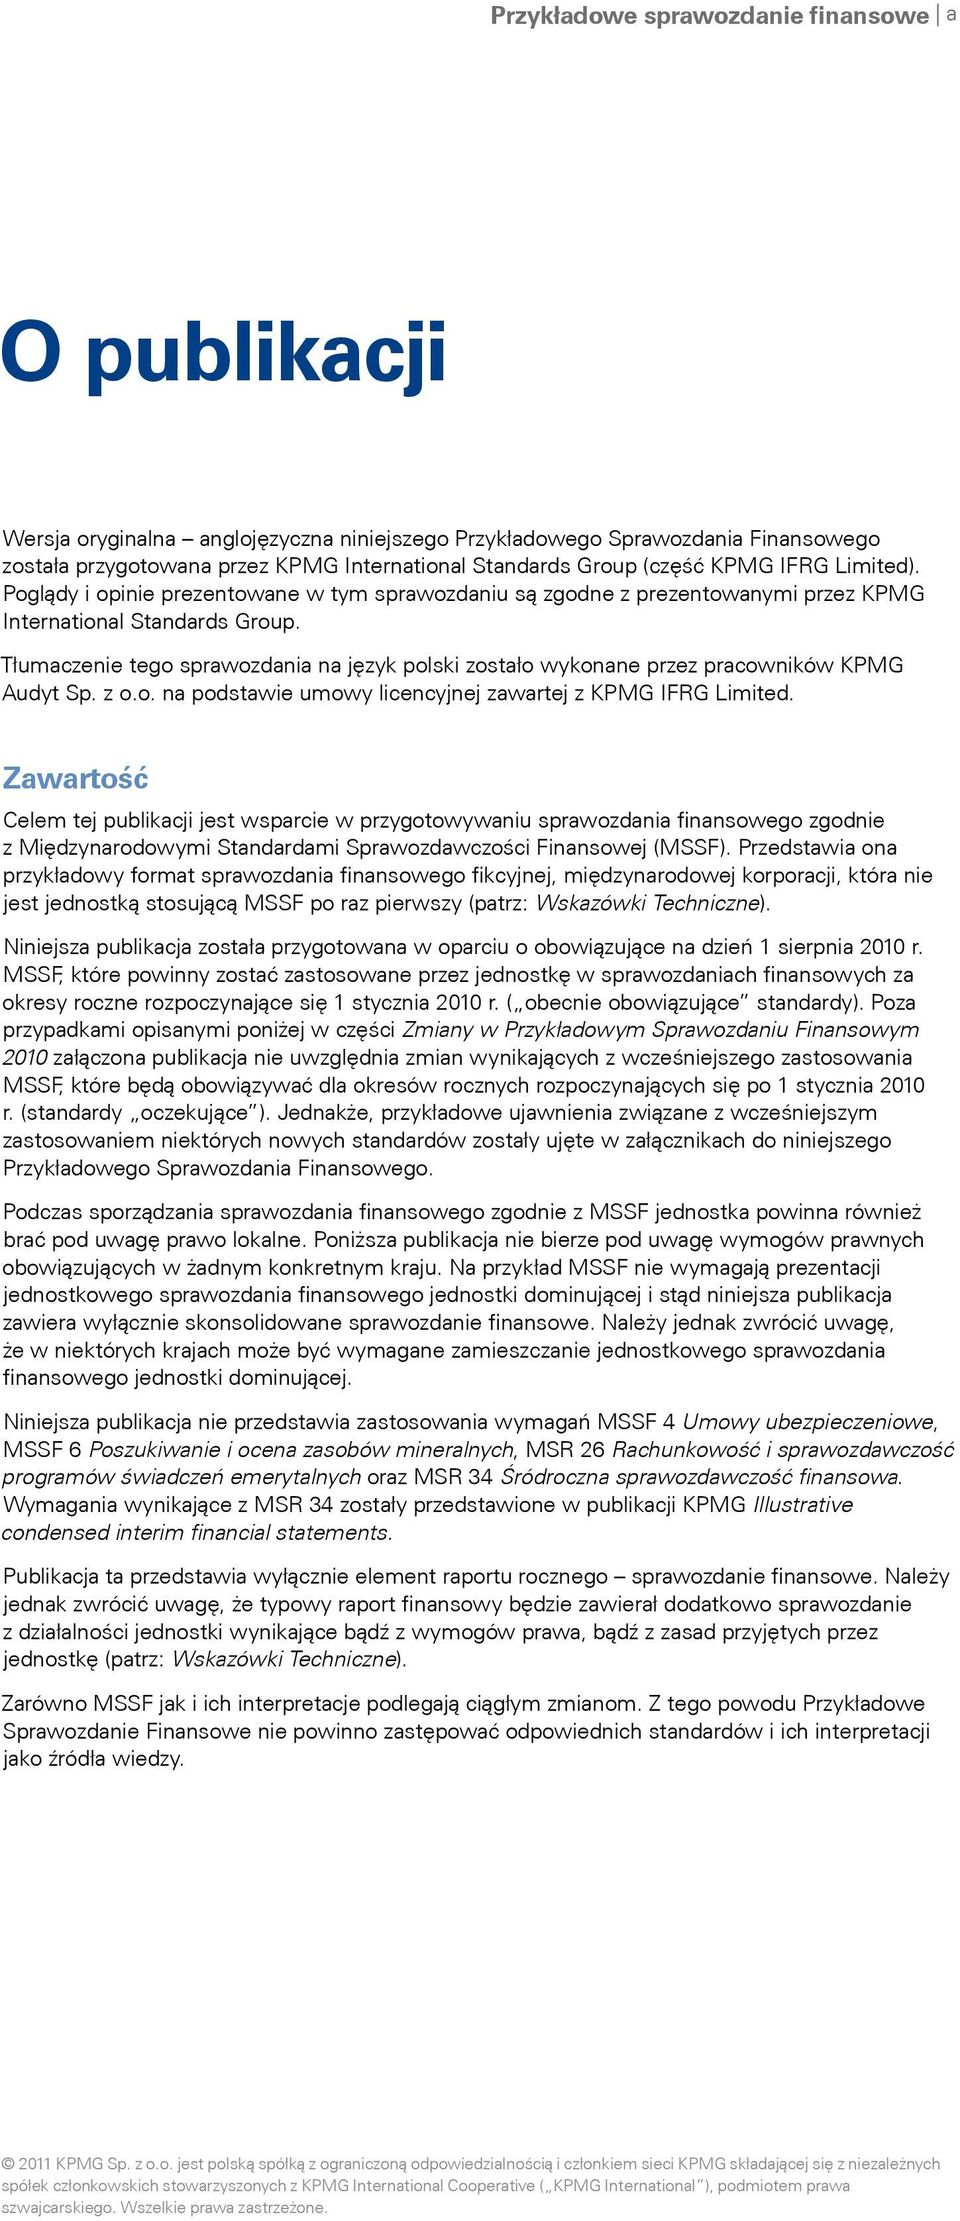 Tłumaczenie tego sprawozdania na język polski zostało wykonane przez pracowników KPMG Audyt Sp. z o.o. na podstawie umowy licencyjnej zawartej z KPMG IFRG Limited.